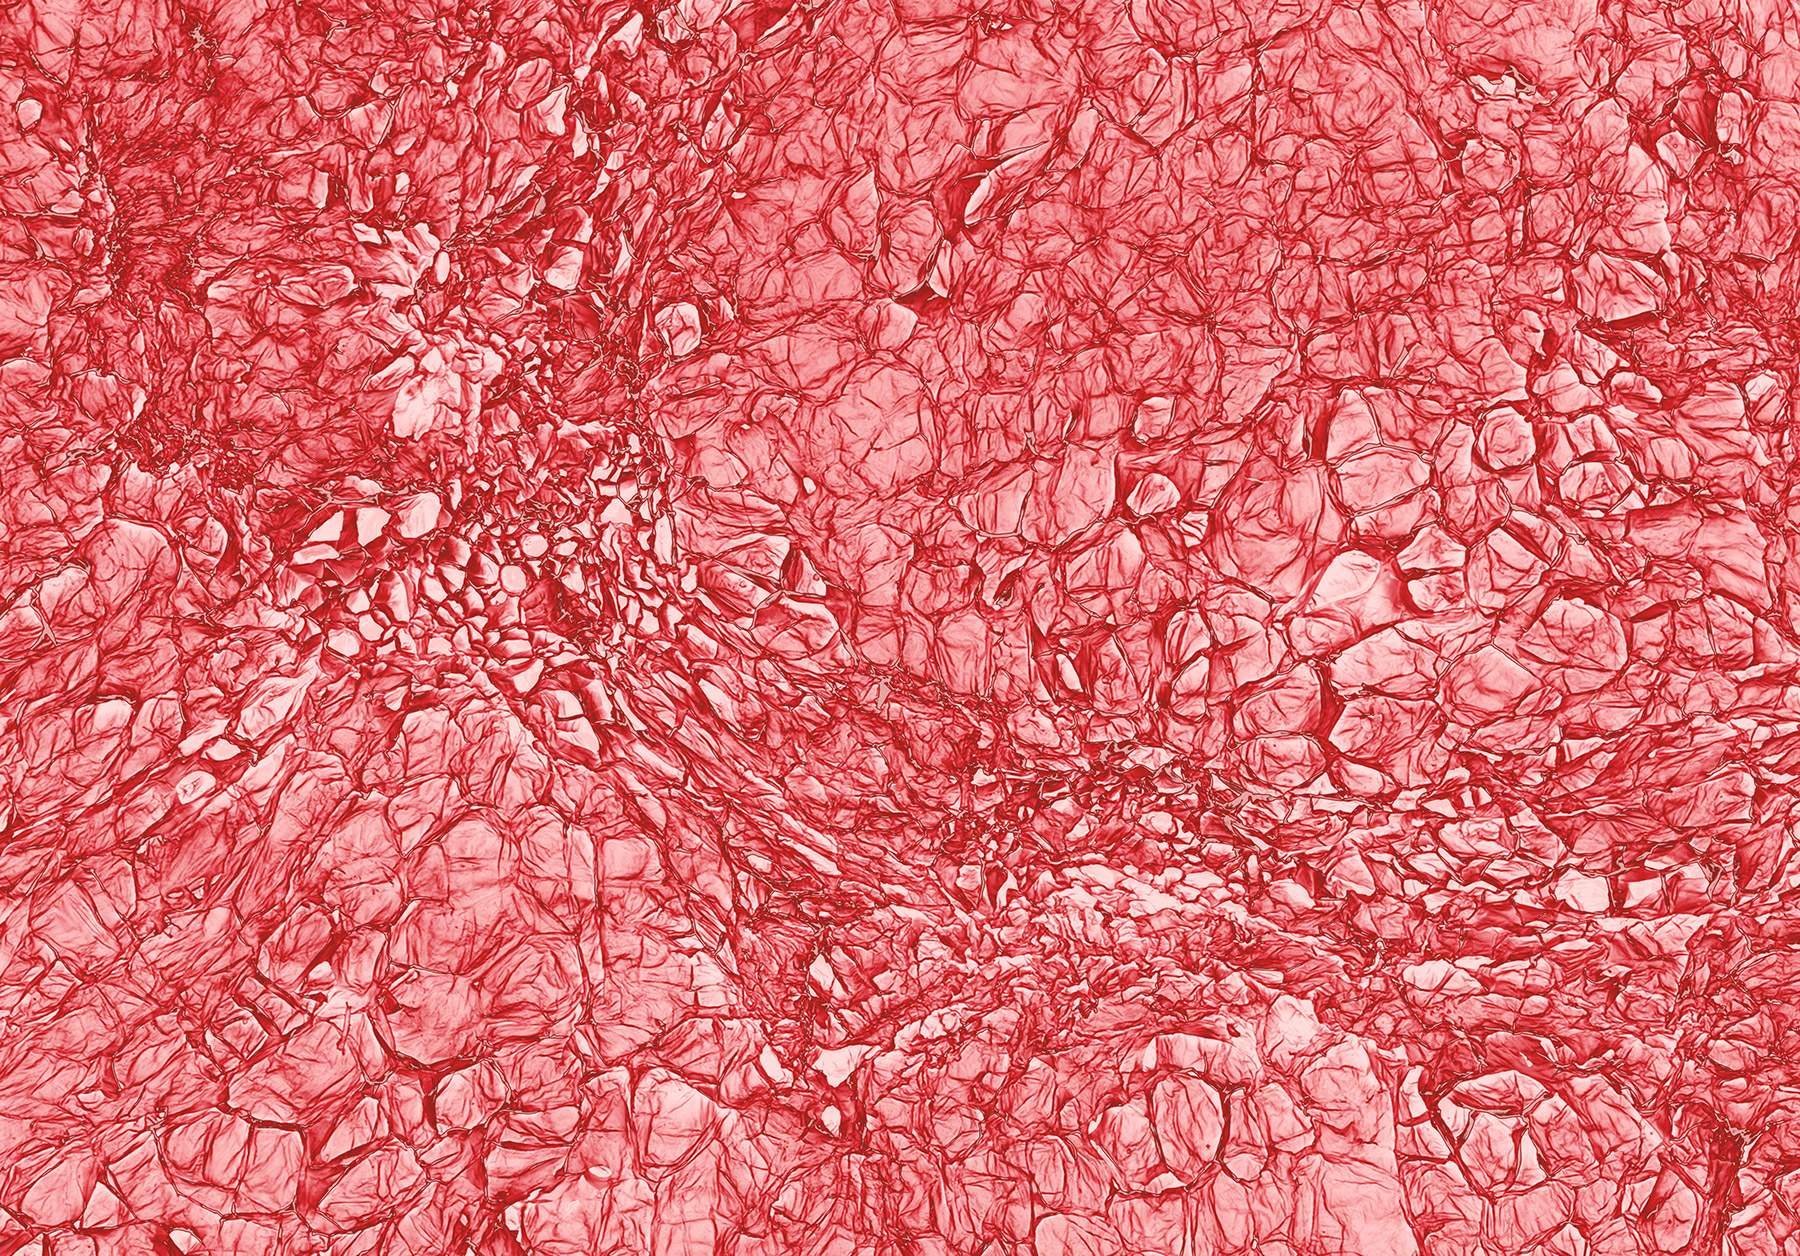 Клетки рябины под микроскопом